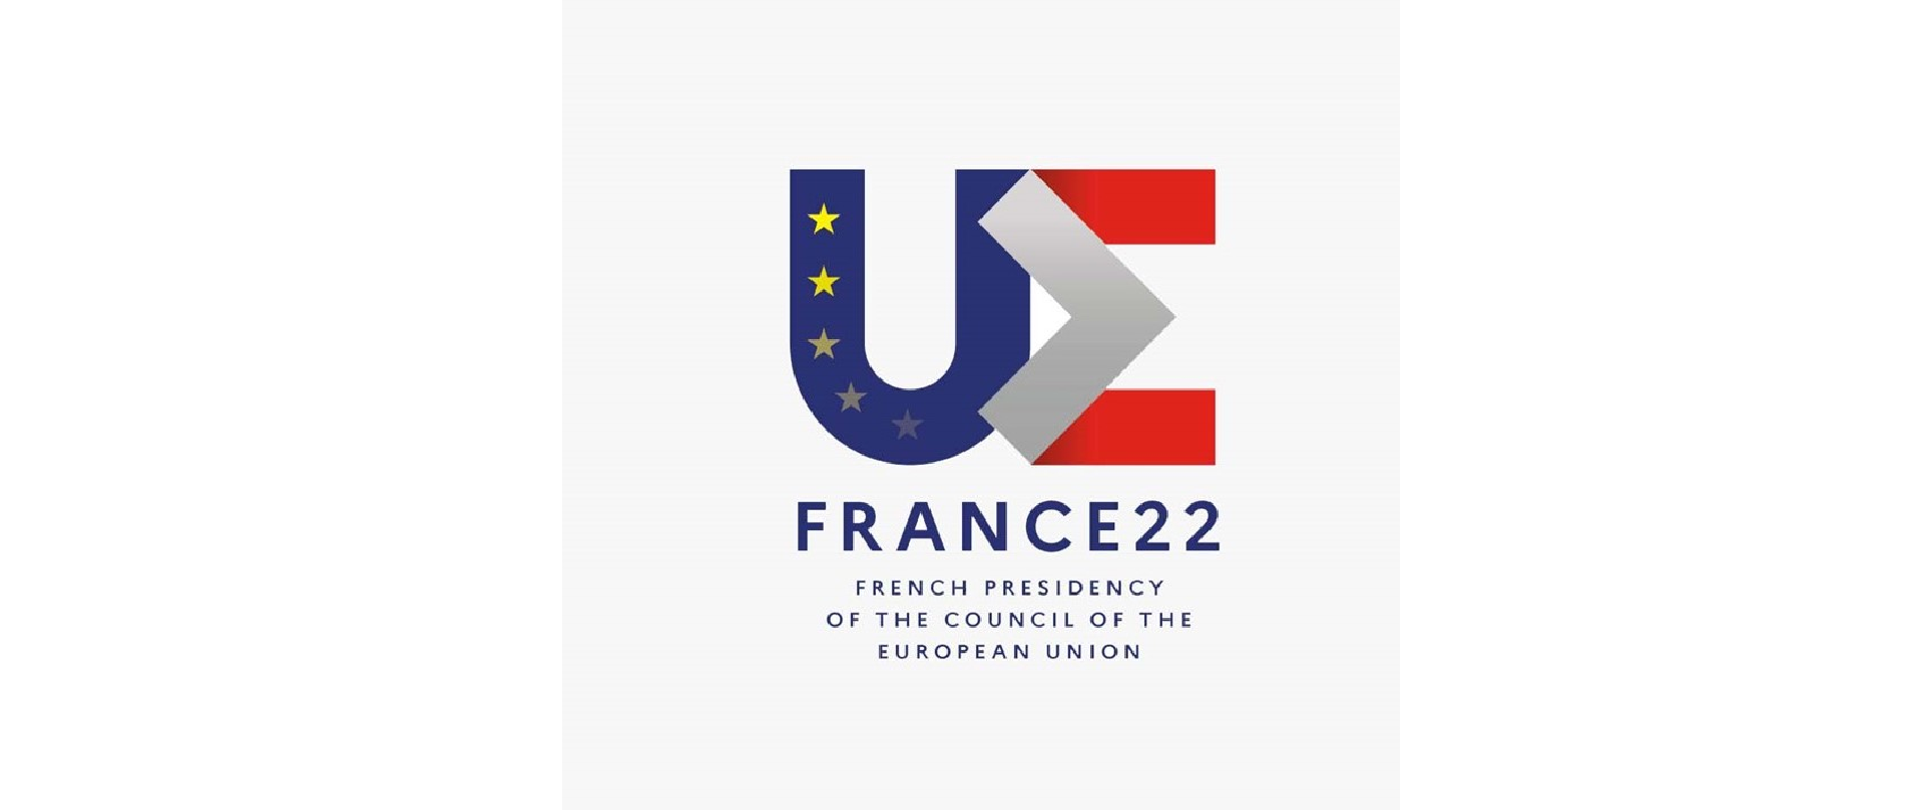 Logo złożone jest z dwóch liter U i E. Liter U jest granatowa i ma narysowanych 5 żółtych gwiazdek. Litera E jest szaro-czerwona. Pod spodem napis "french presidency of the council of the European Union"